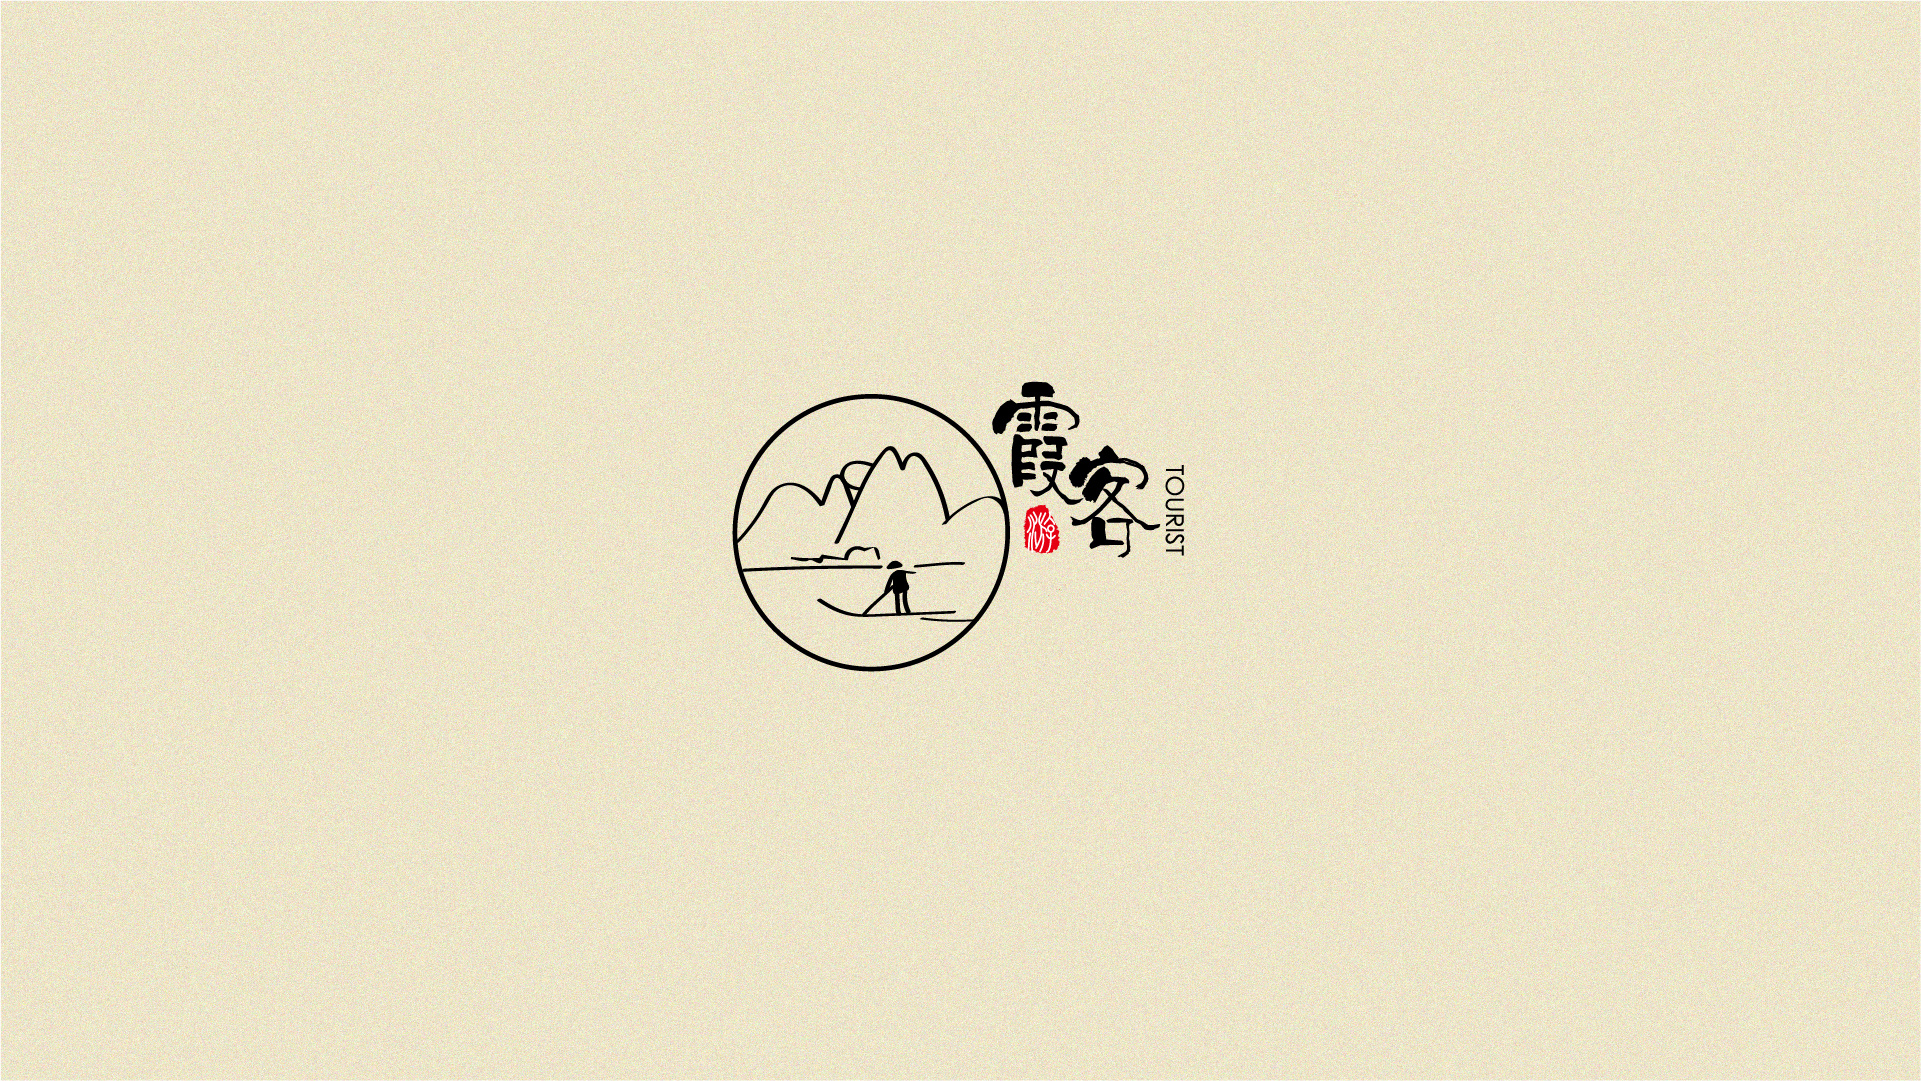 中国风logo小集